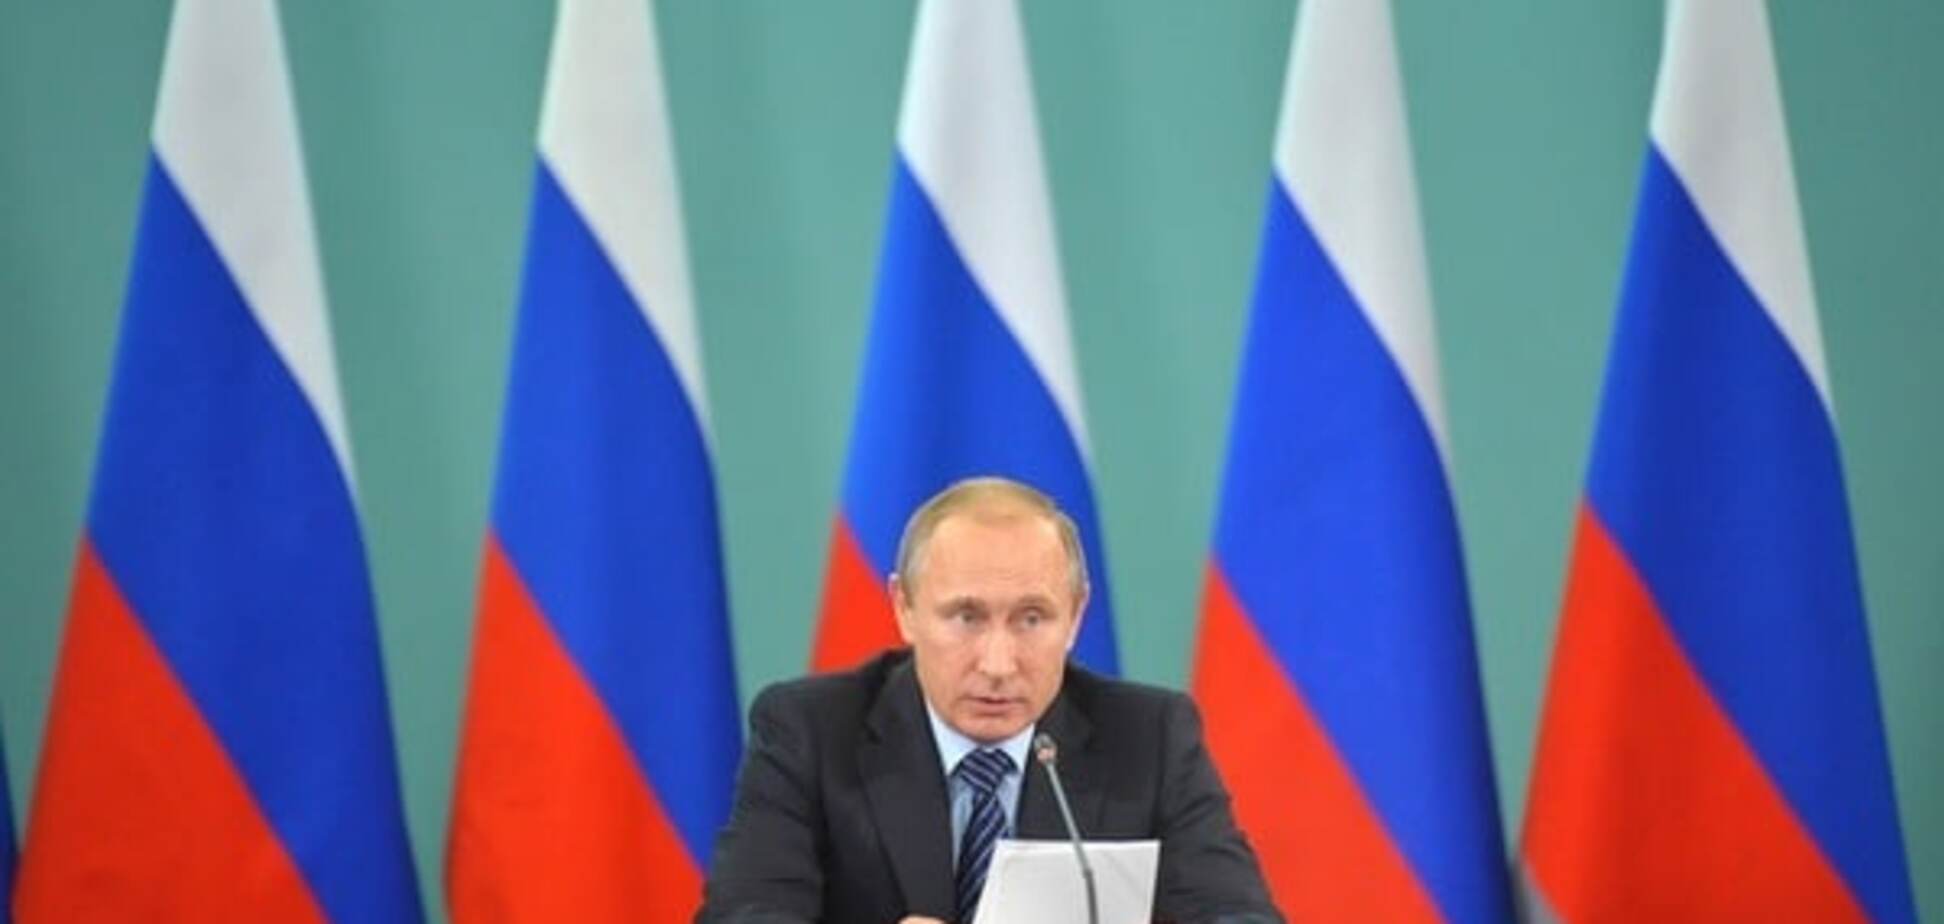 Крымчанам устроят массовую трансляцию пресс-конференции Путина